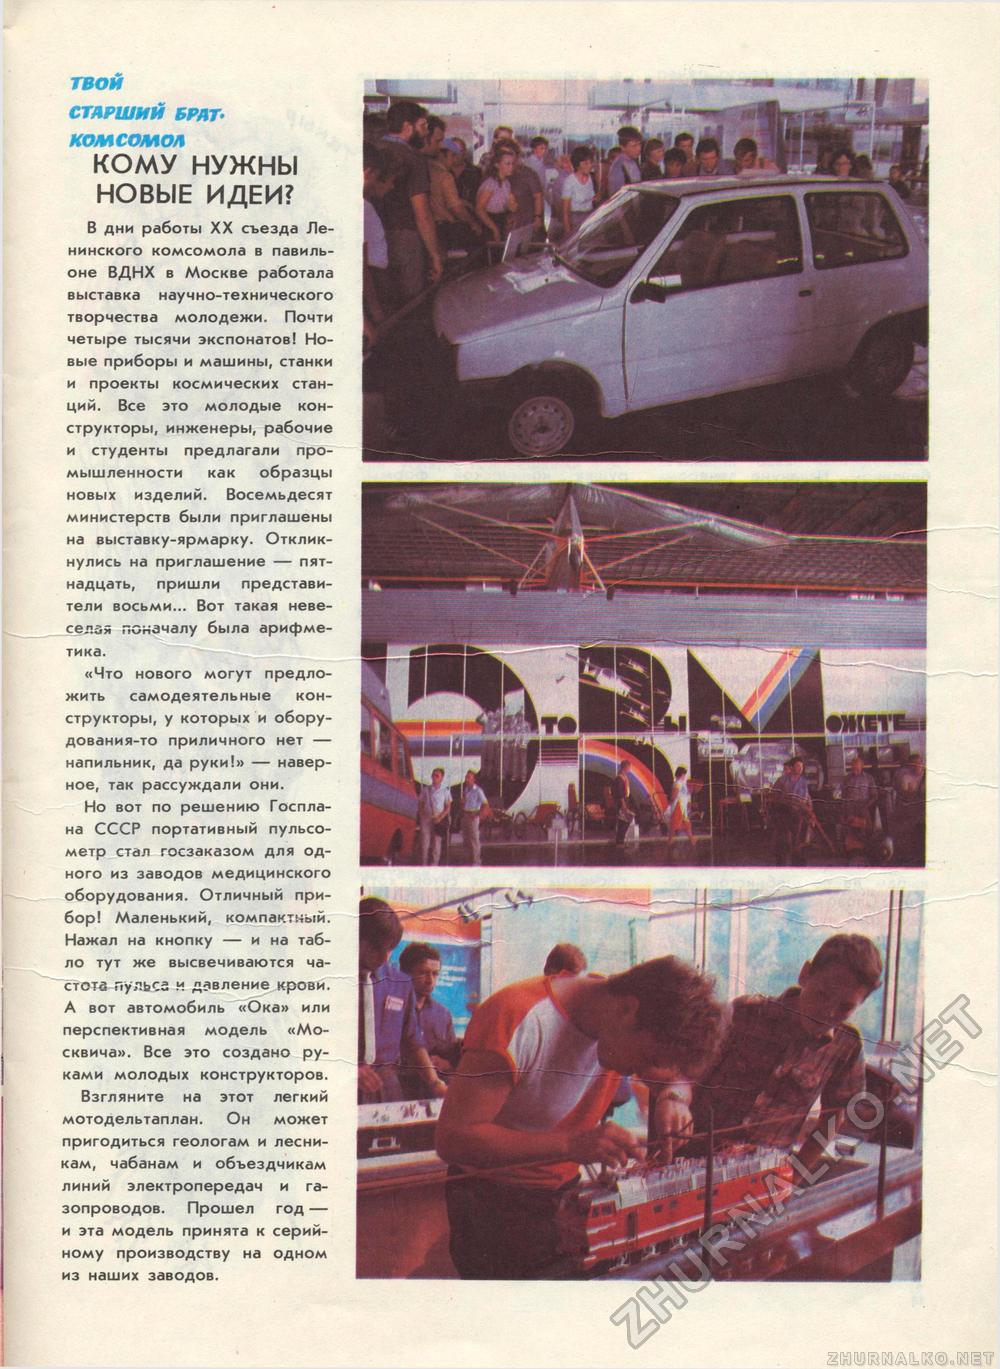  1988-06,  22